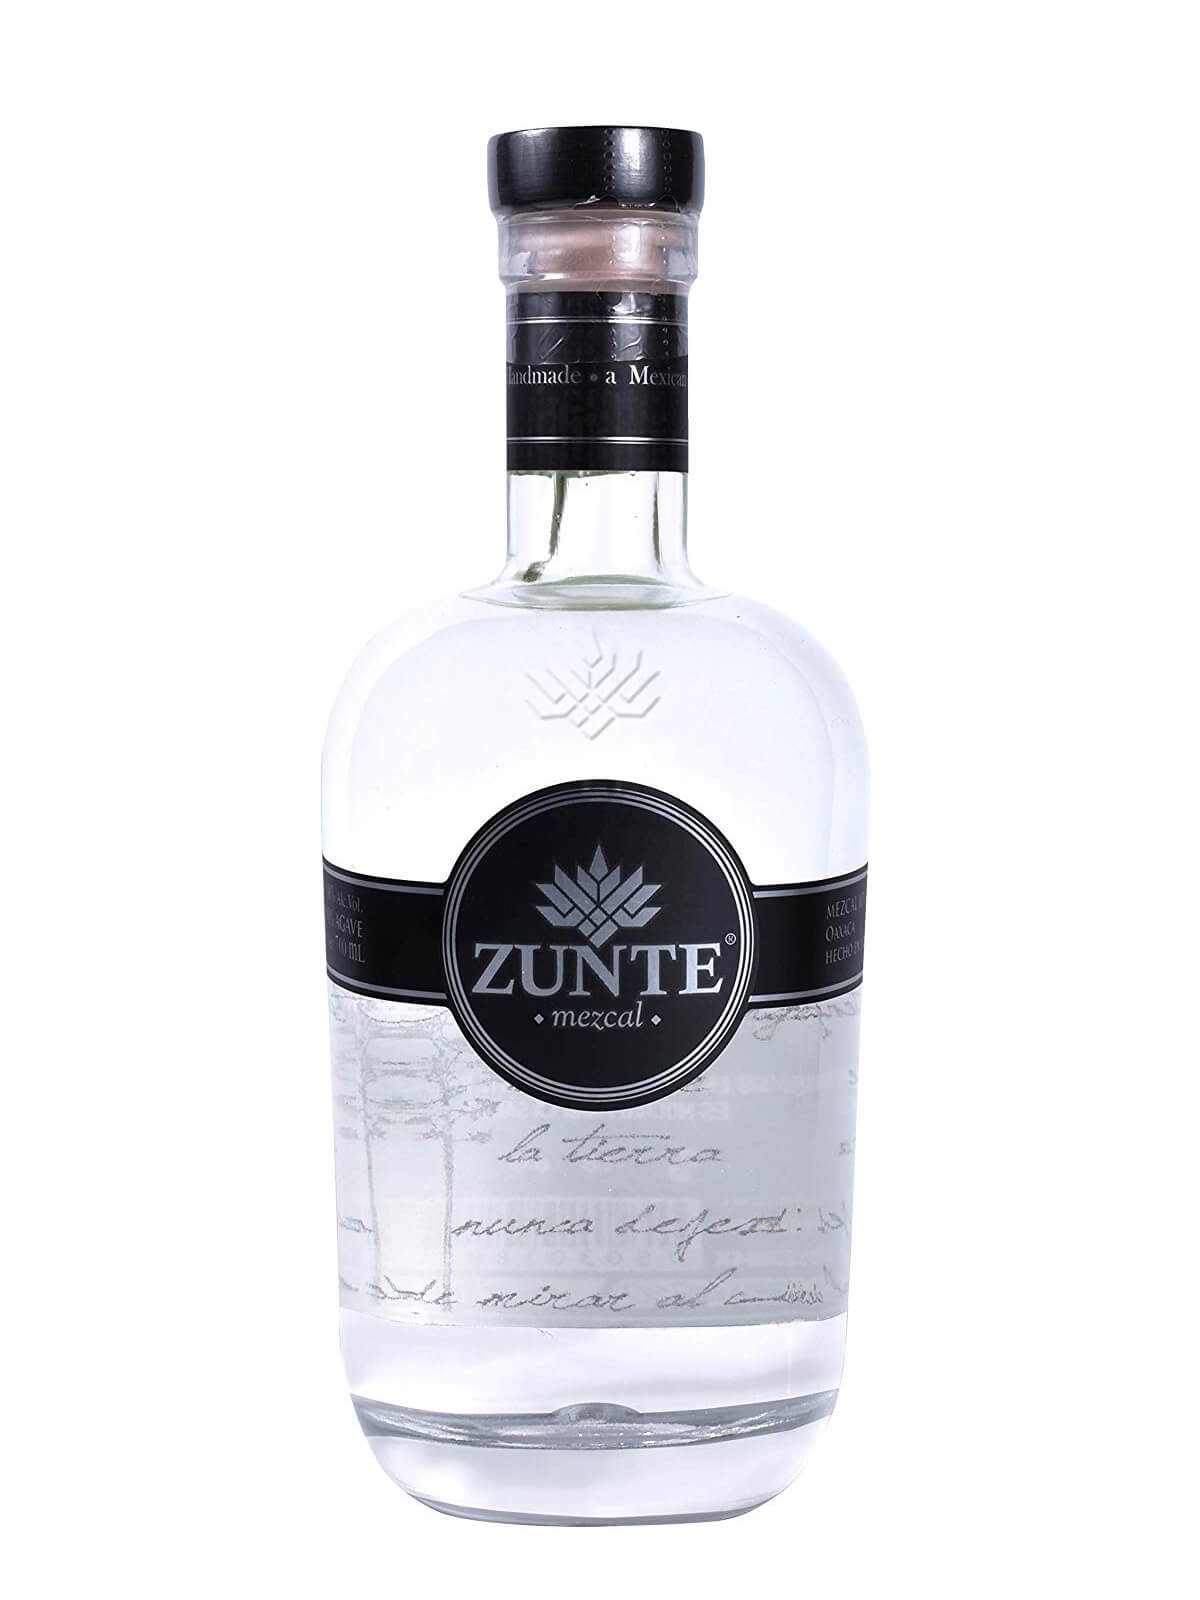 Zunte Mezcal bottle